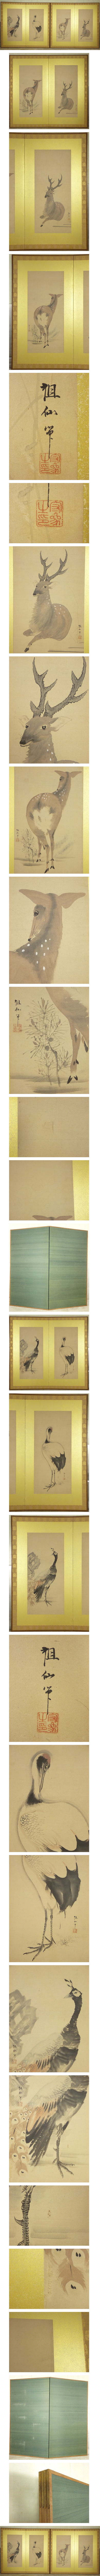 銀座販売52　森祖仙 孔雀 鶴 鹿の図 二枚折 屏風 一双 高さ 約174.5cm 紙本 肉筆 動物画 日本画 花鳥、鳥獣